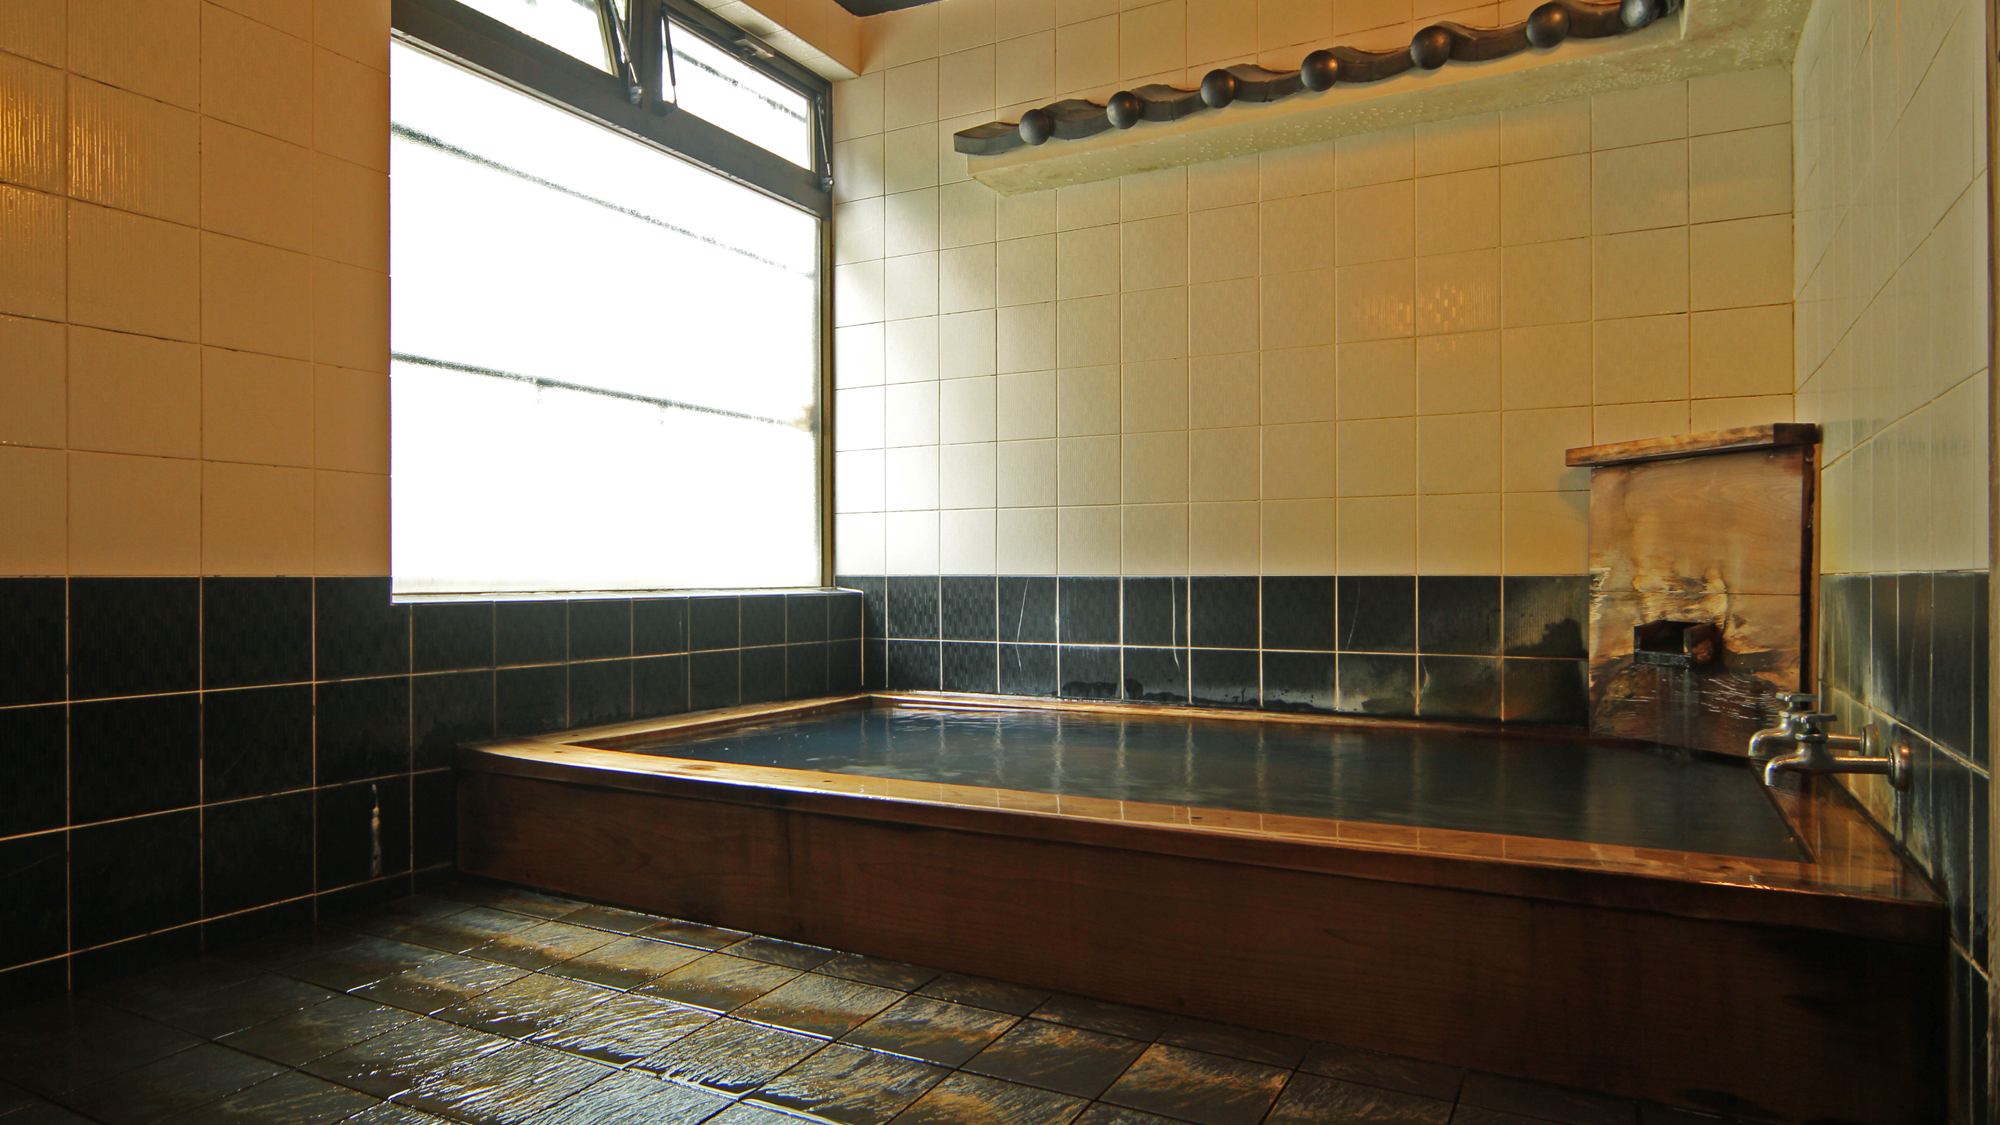 湯治場として有名な、湯川温泉の湯